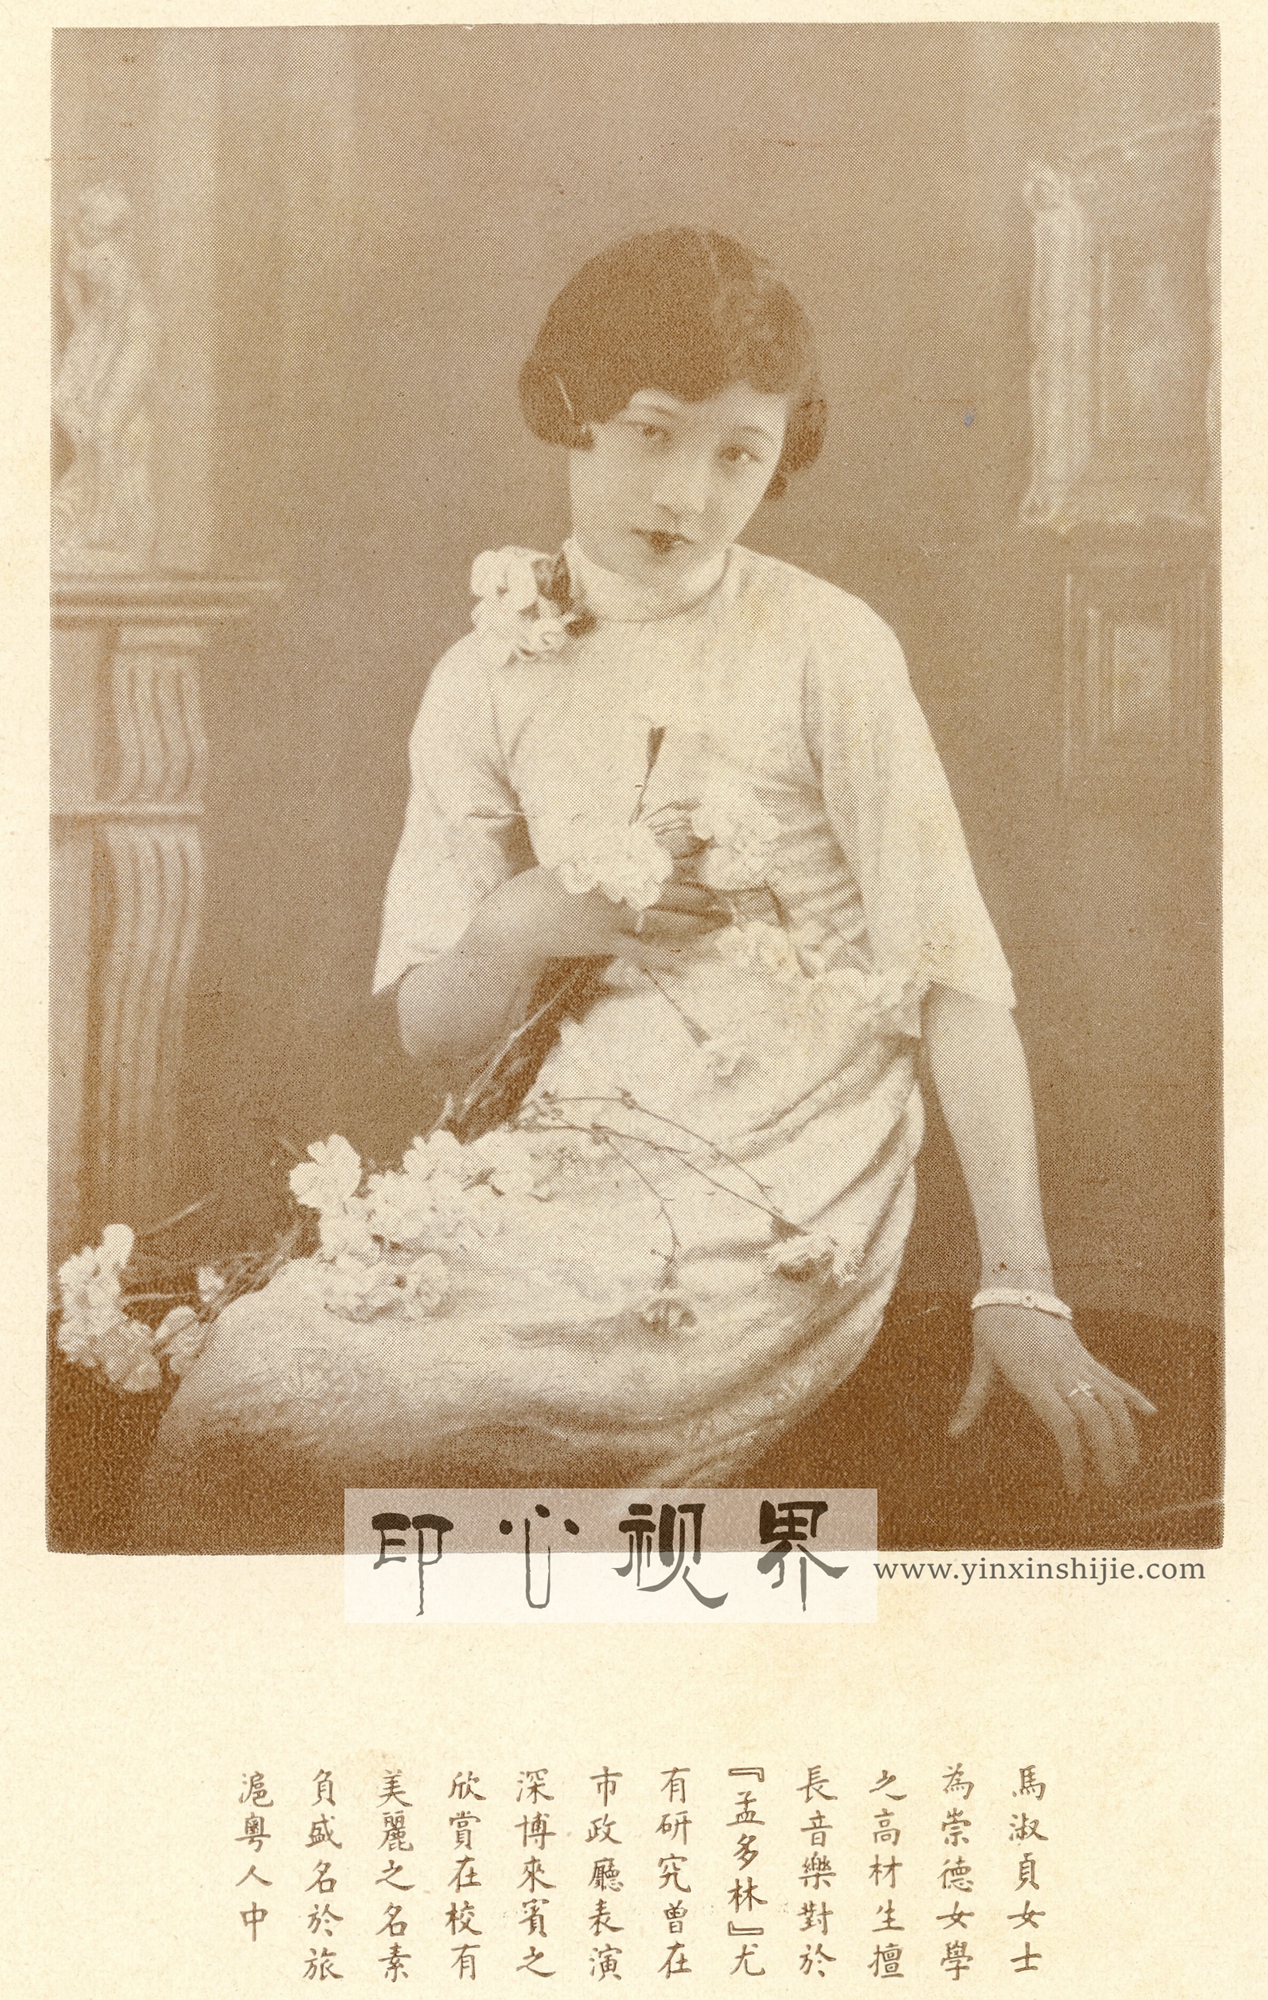 上海崇德女学校花马淑贞女士--1930年《闺秀影集》